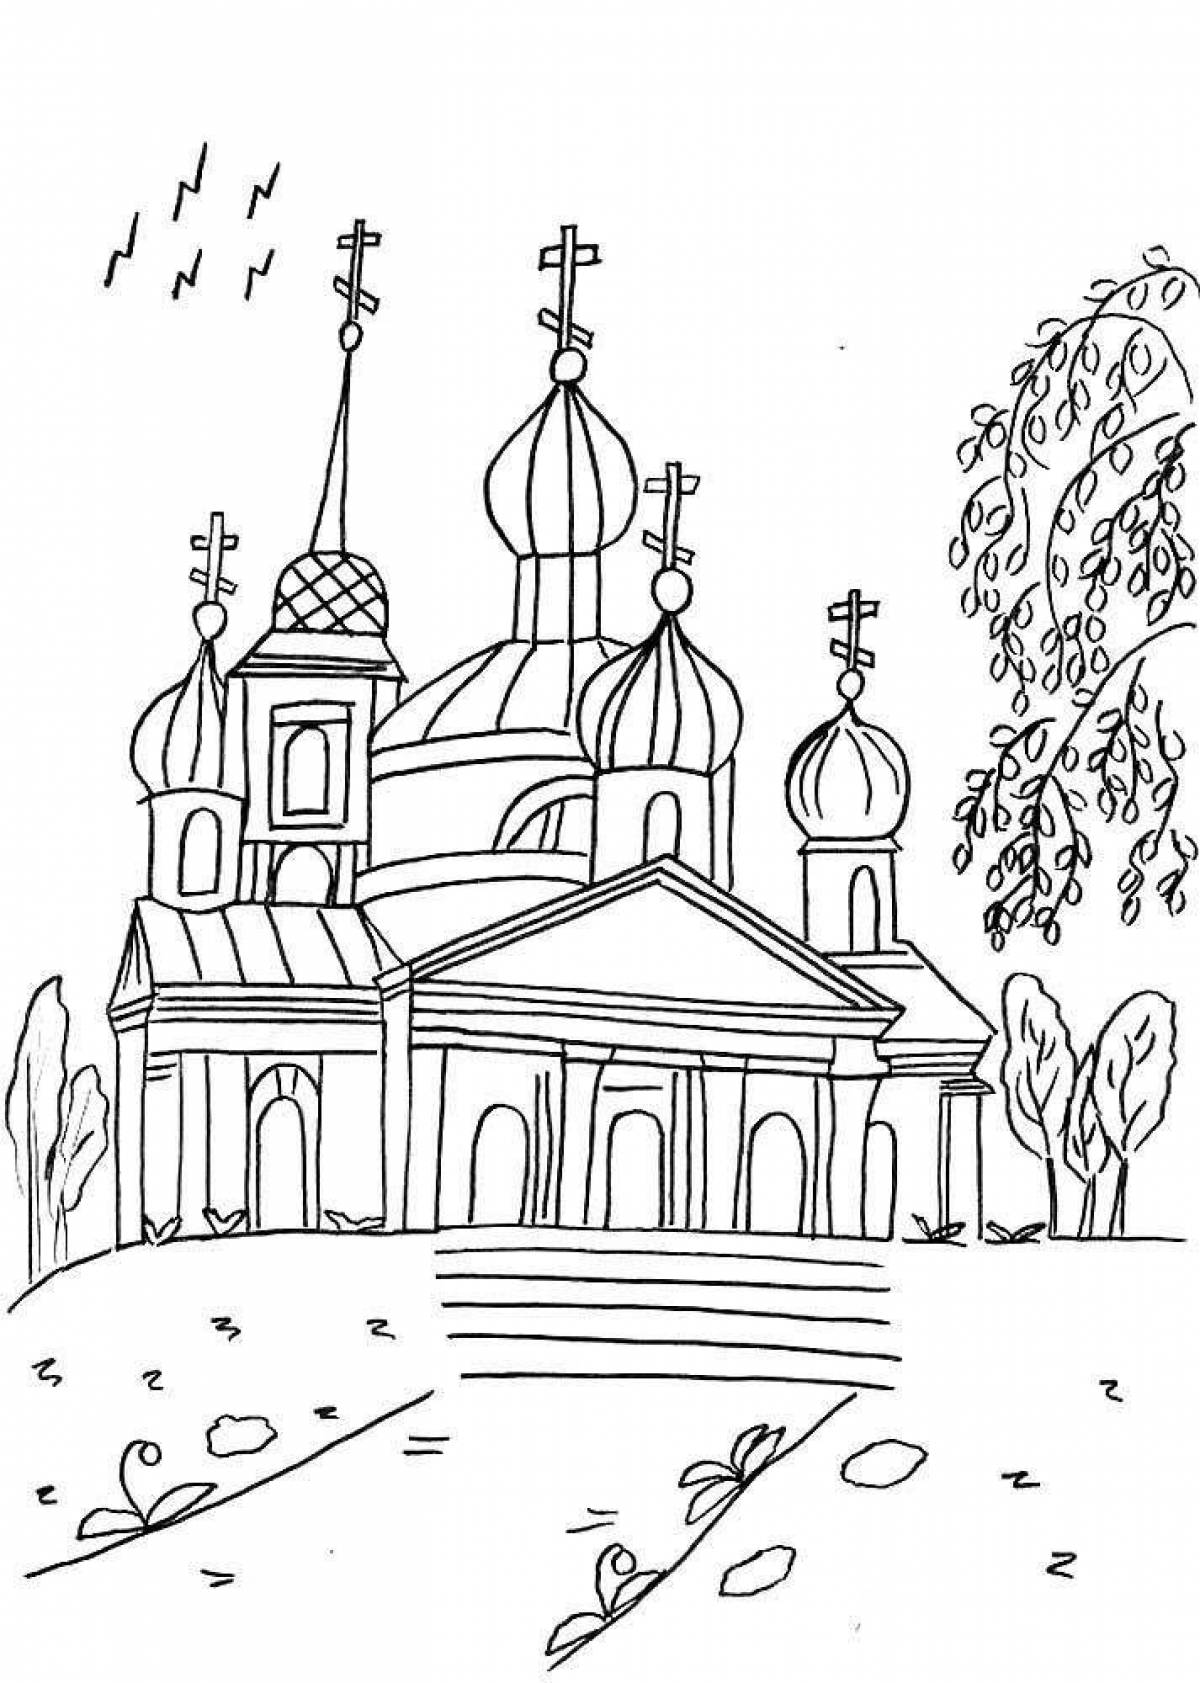 Charming church drawing